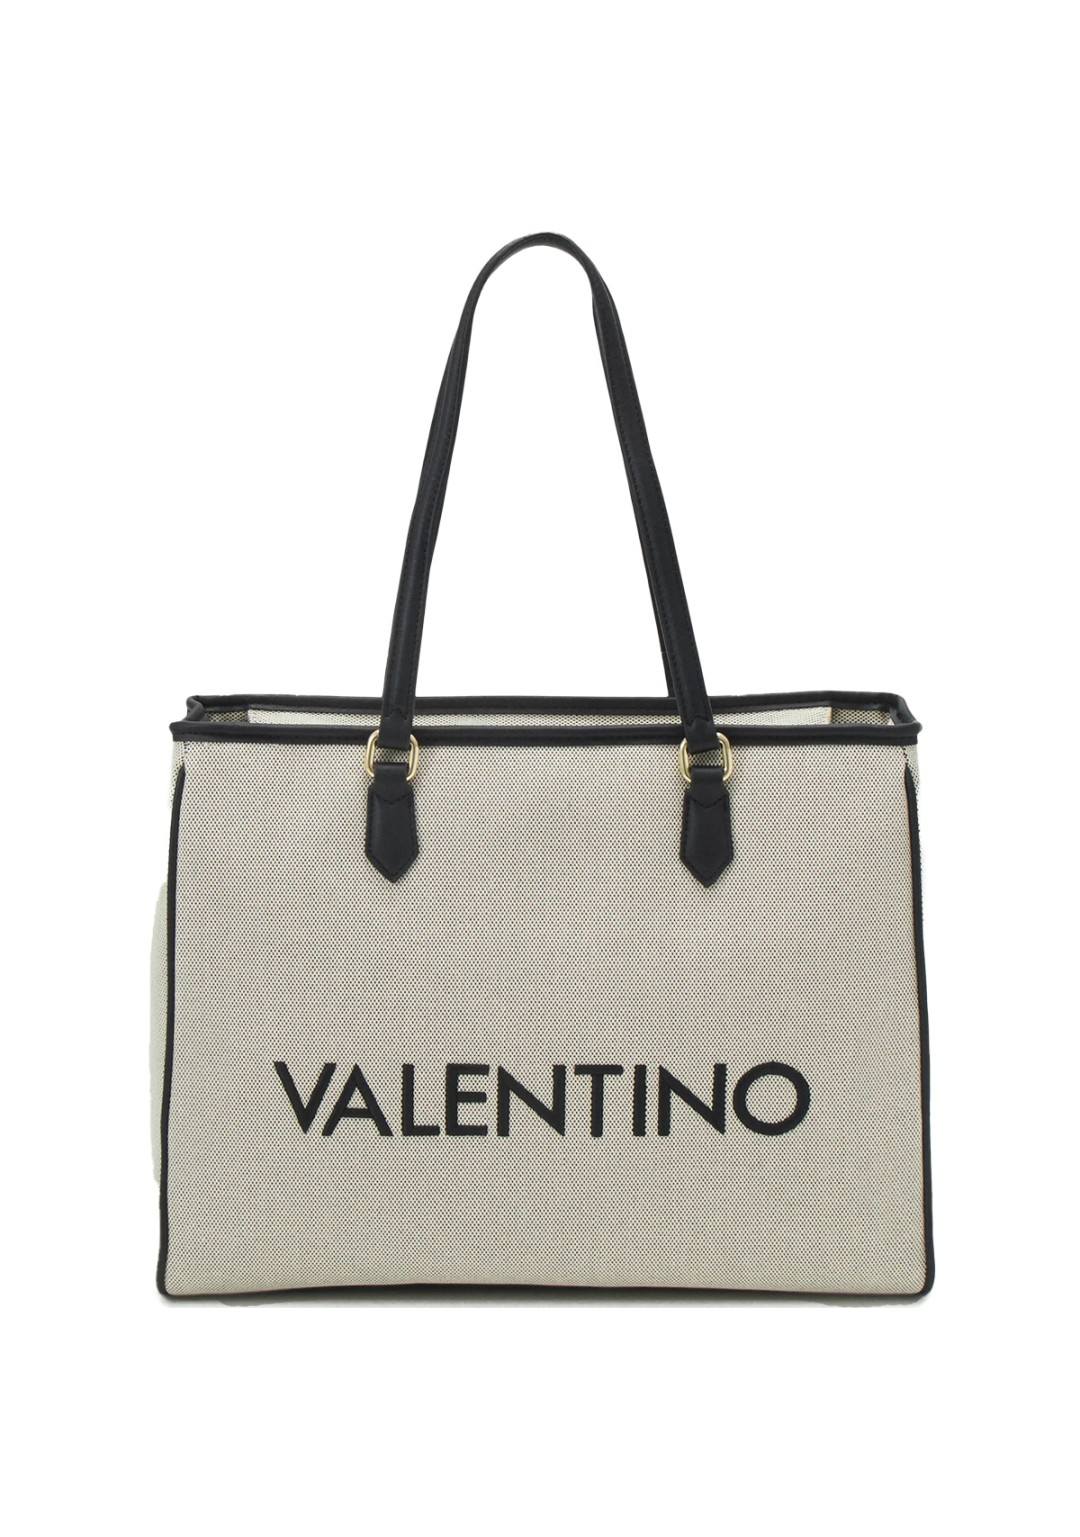 Valentino - Borsa Grande - Donna - Chelsea Re T01